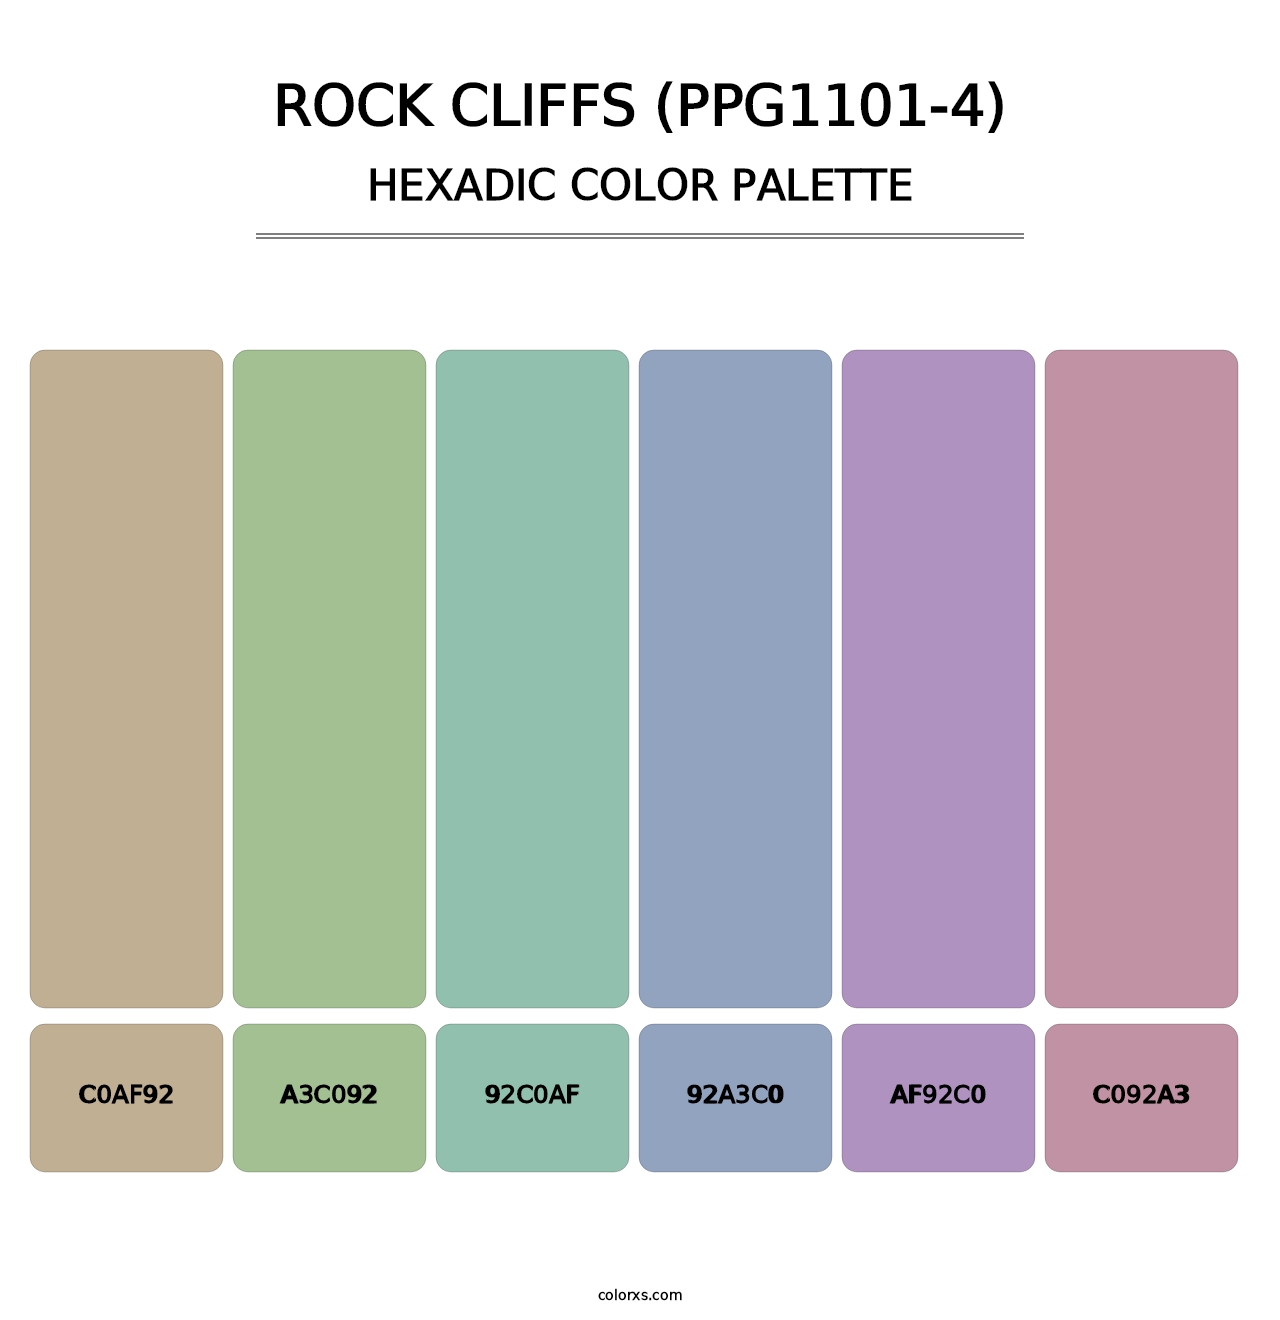 Rock Cliffs (PPG1101-4) - Hexadic Color Palette